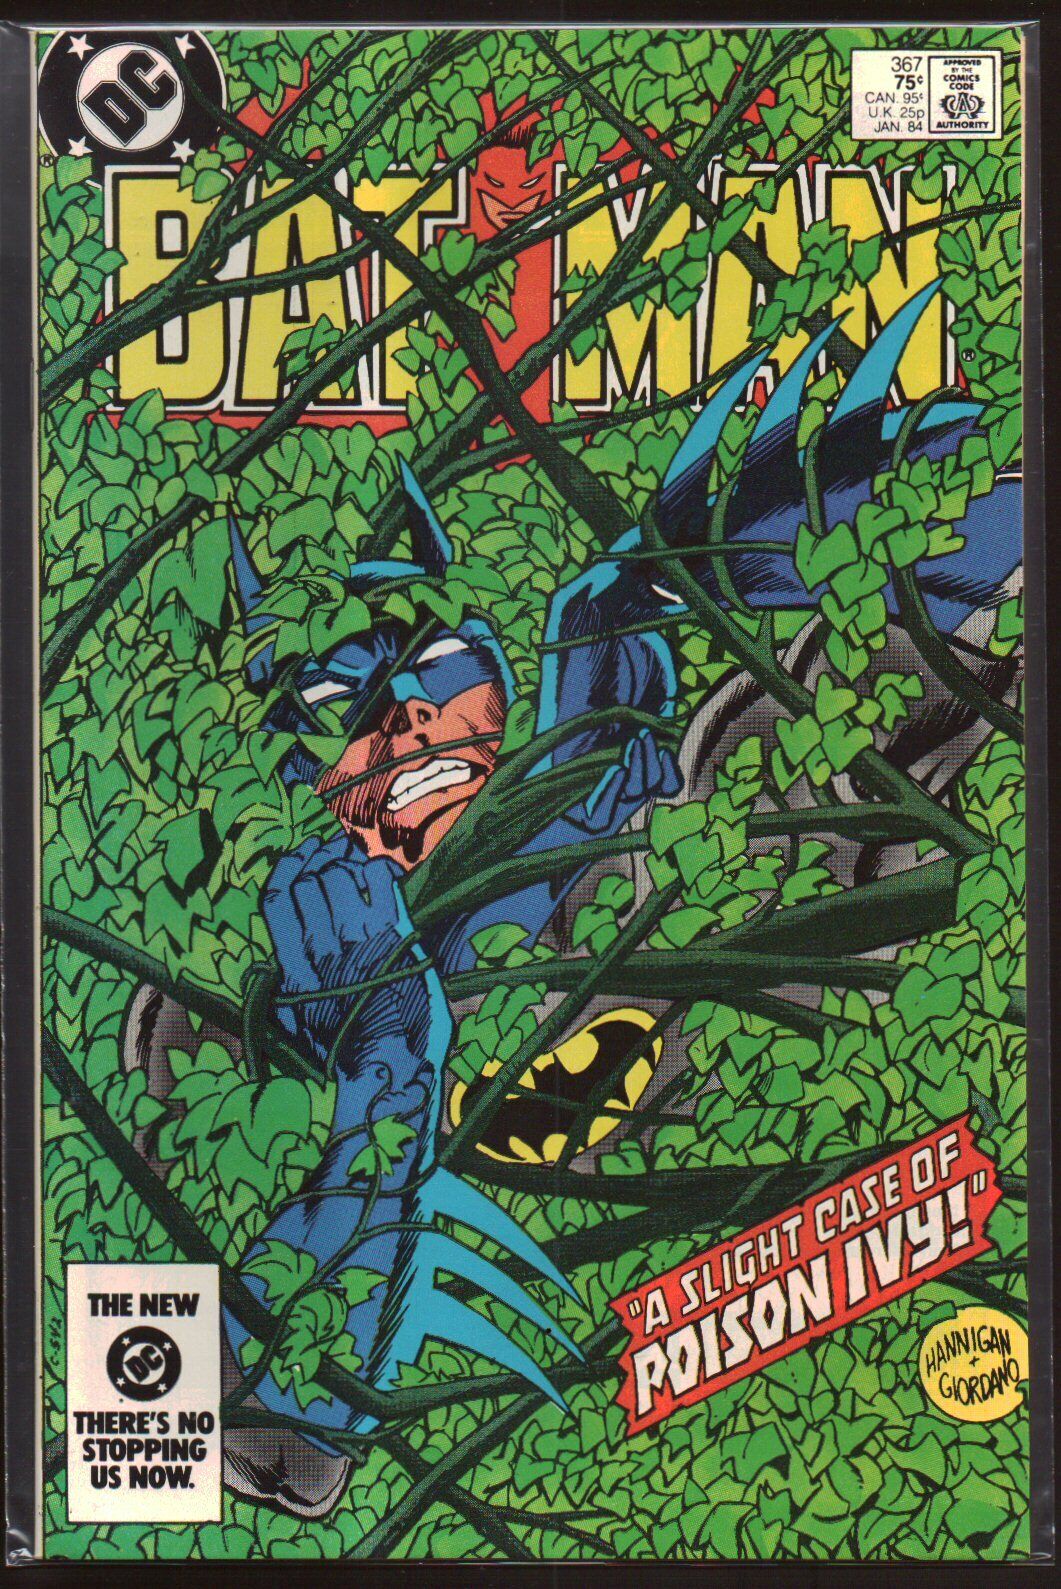 Batman #367-461 VF/NM 9.0+ 1984-1991 DC Comics Back Issues